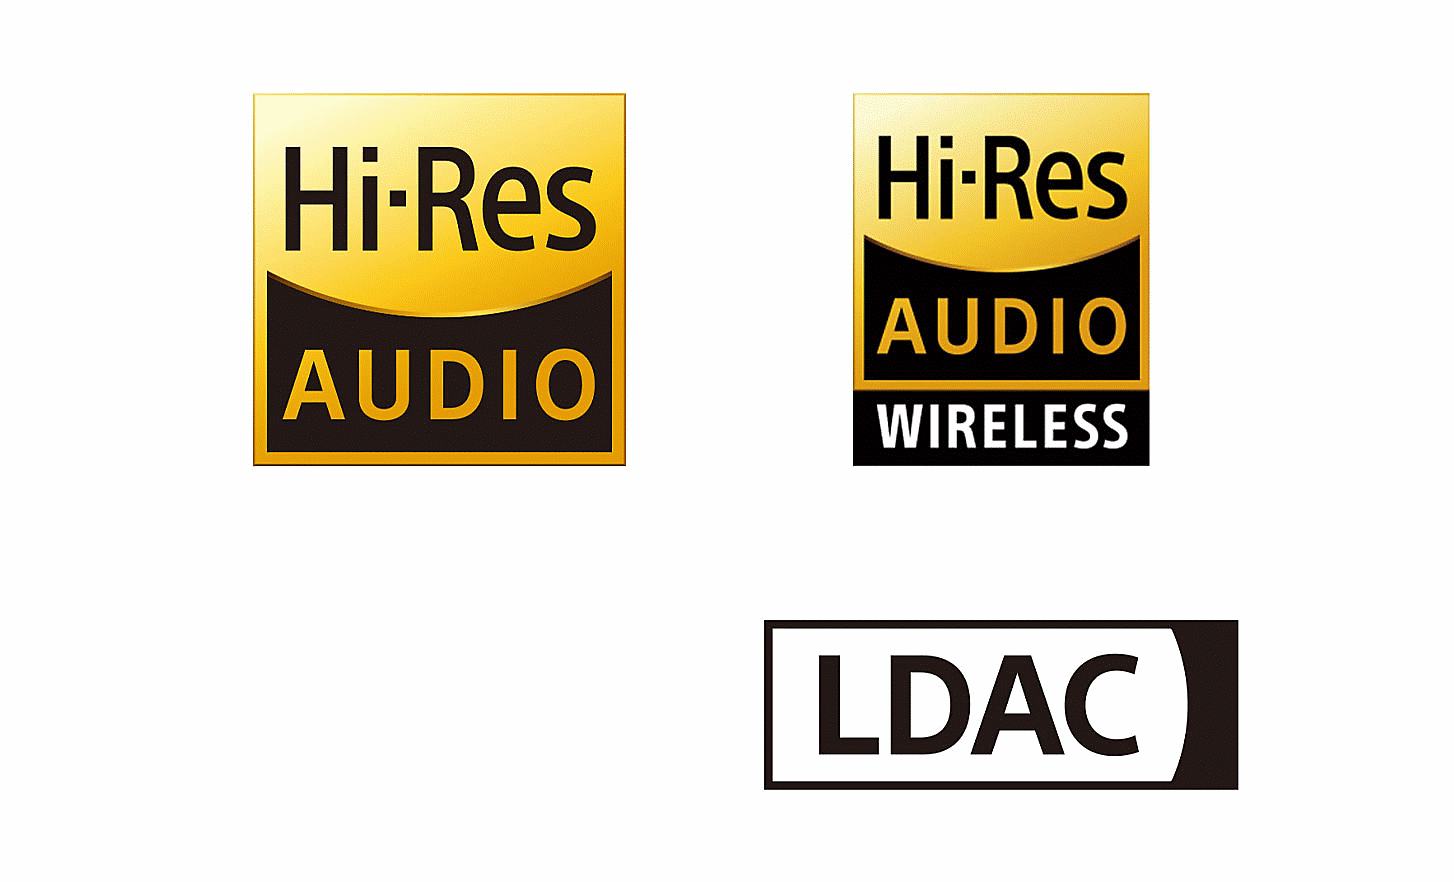 Λογότυπα ήχου υψηλής ανάλυσης, ασύρματου ήχου υψηλής ανάλυσης και LDAC.